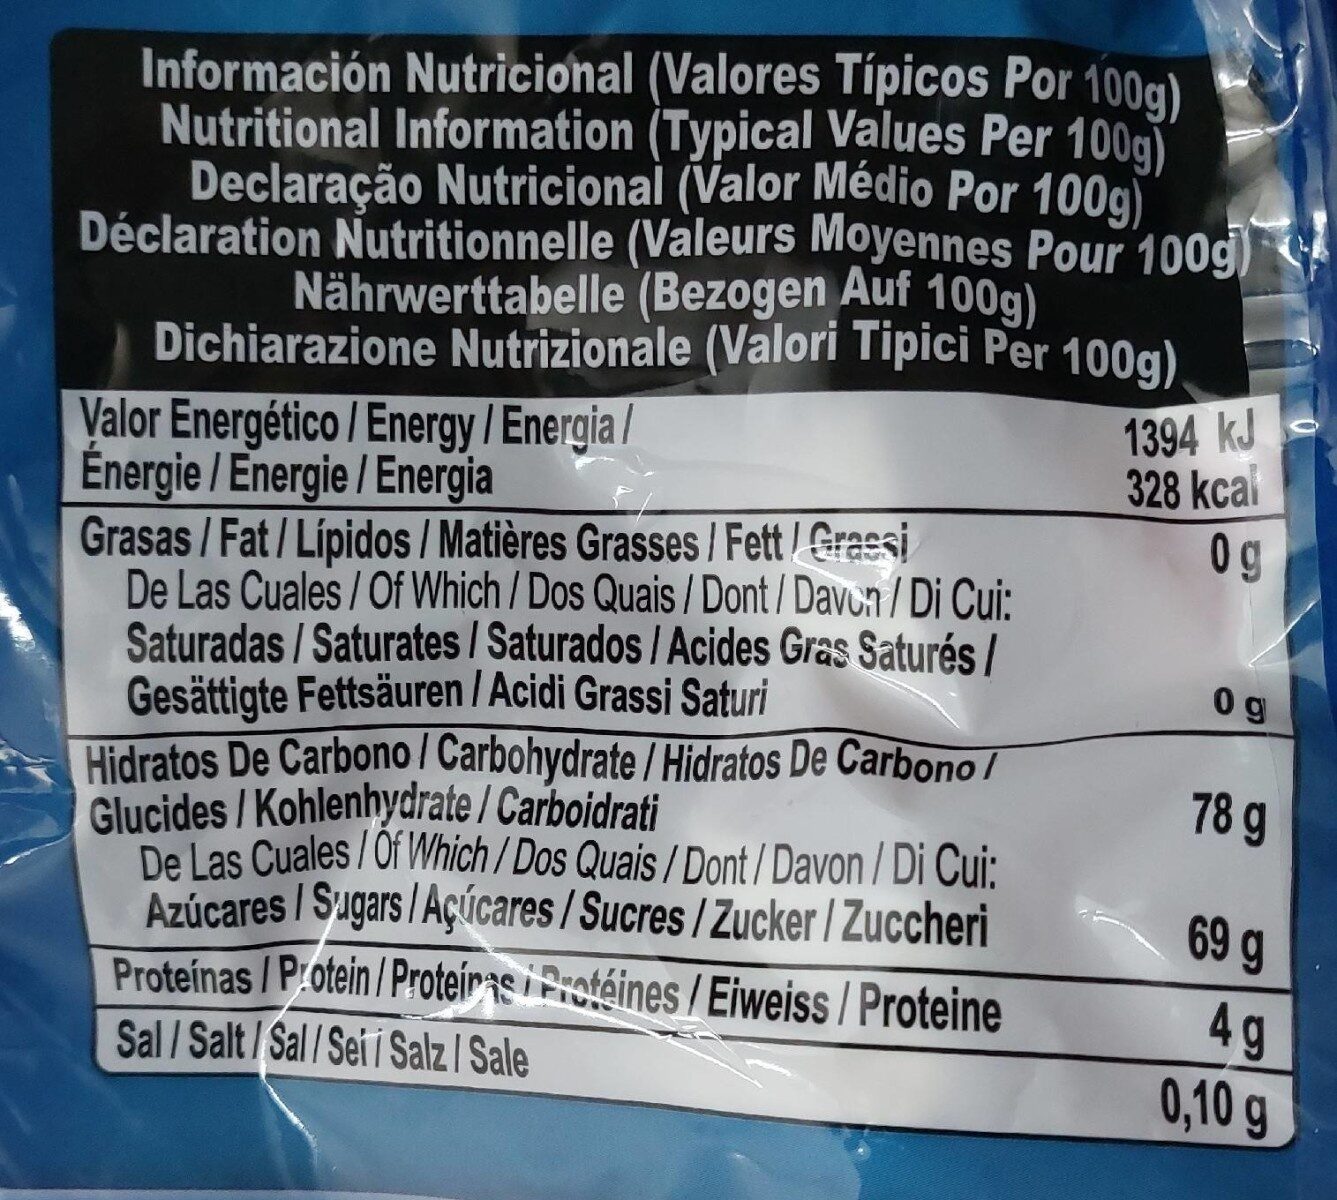 Marshmallow - Tableau nutritionnel